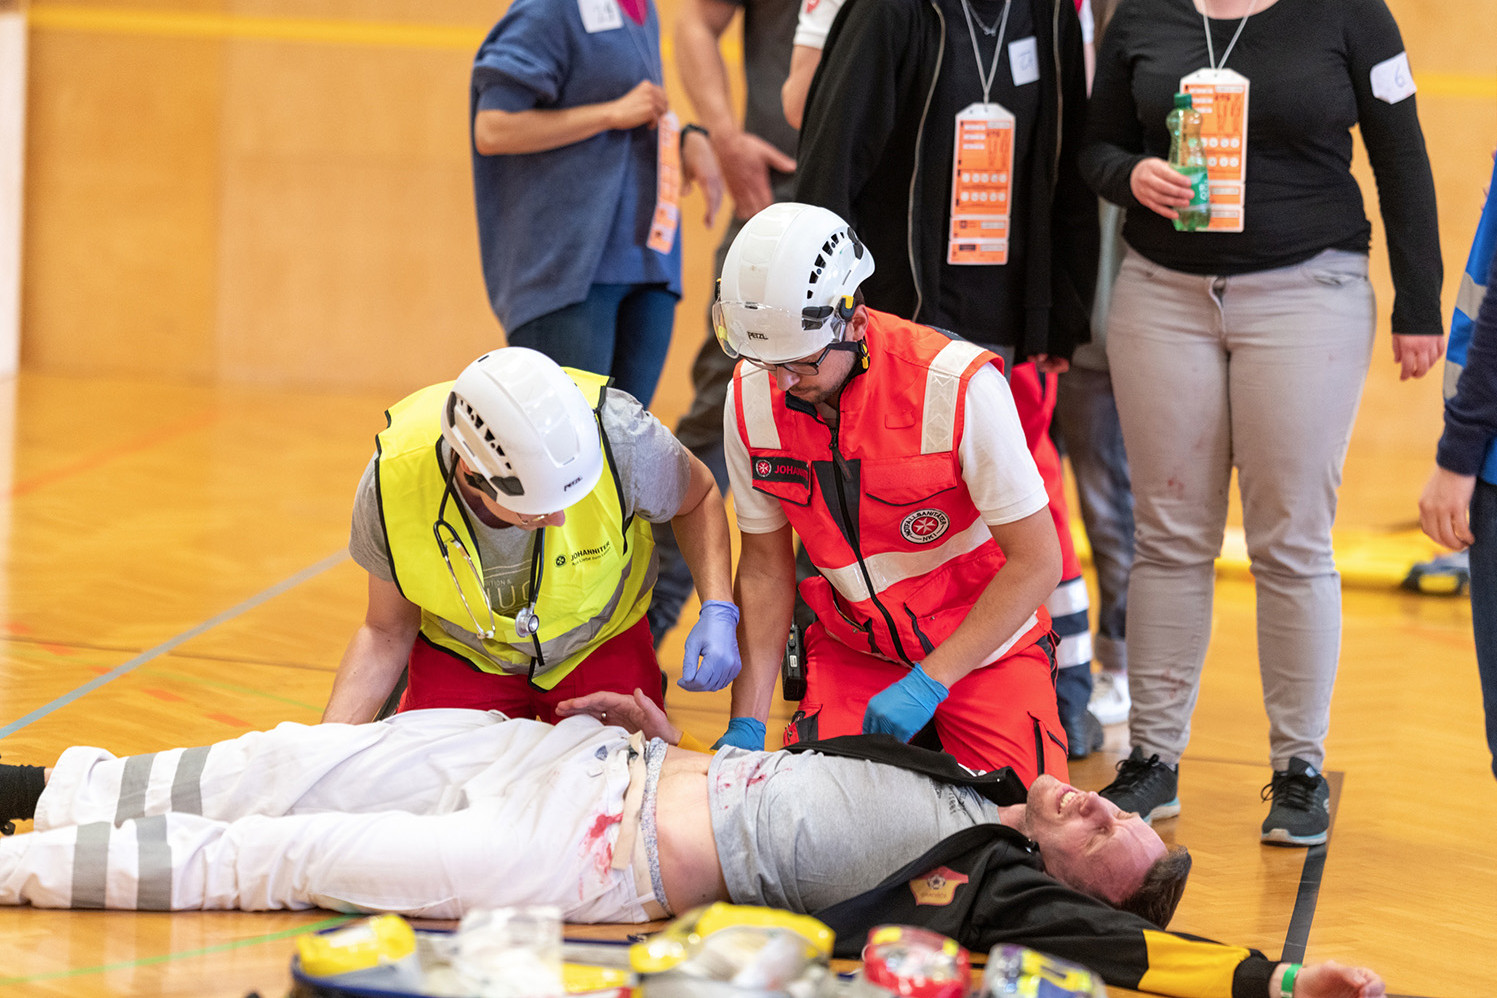 Ein Notarzt und ein Sanitäter helfen einer verletzten Person, die am Boden liegt.